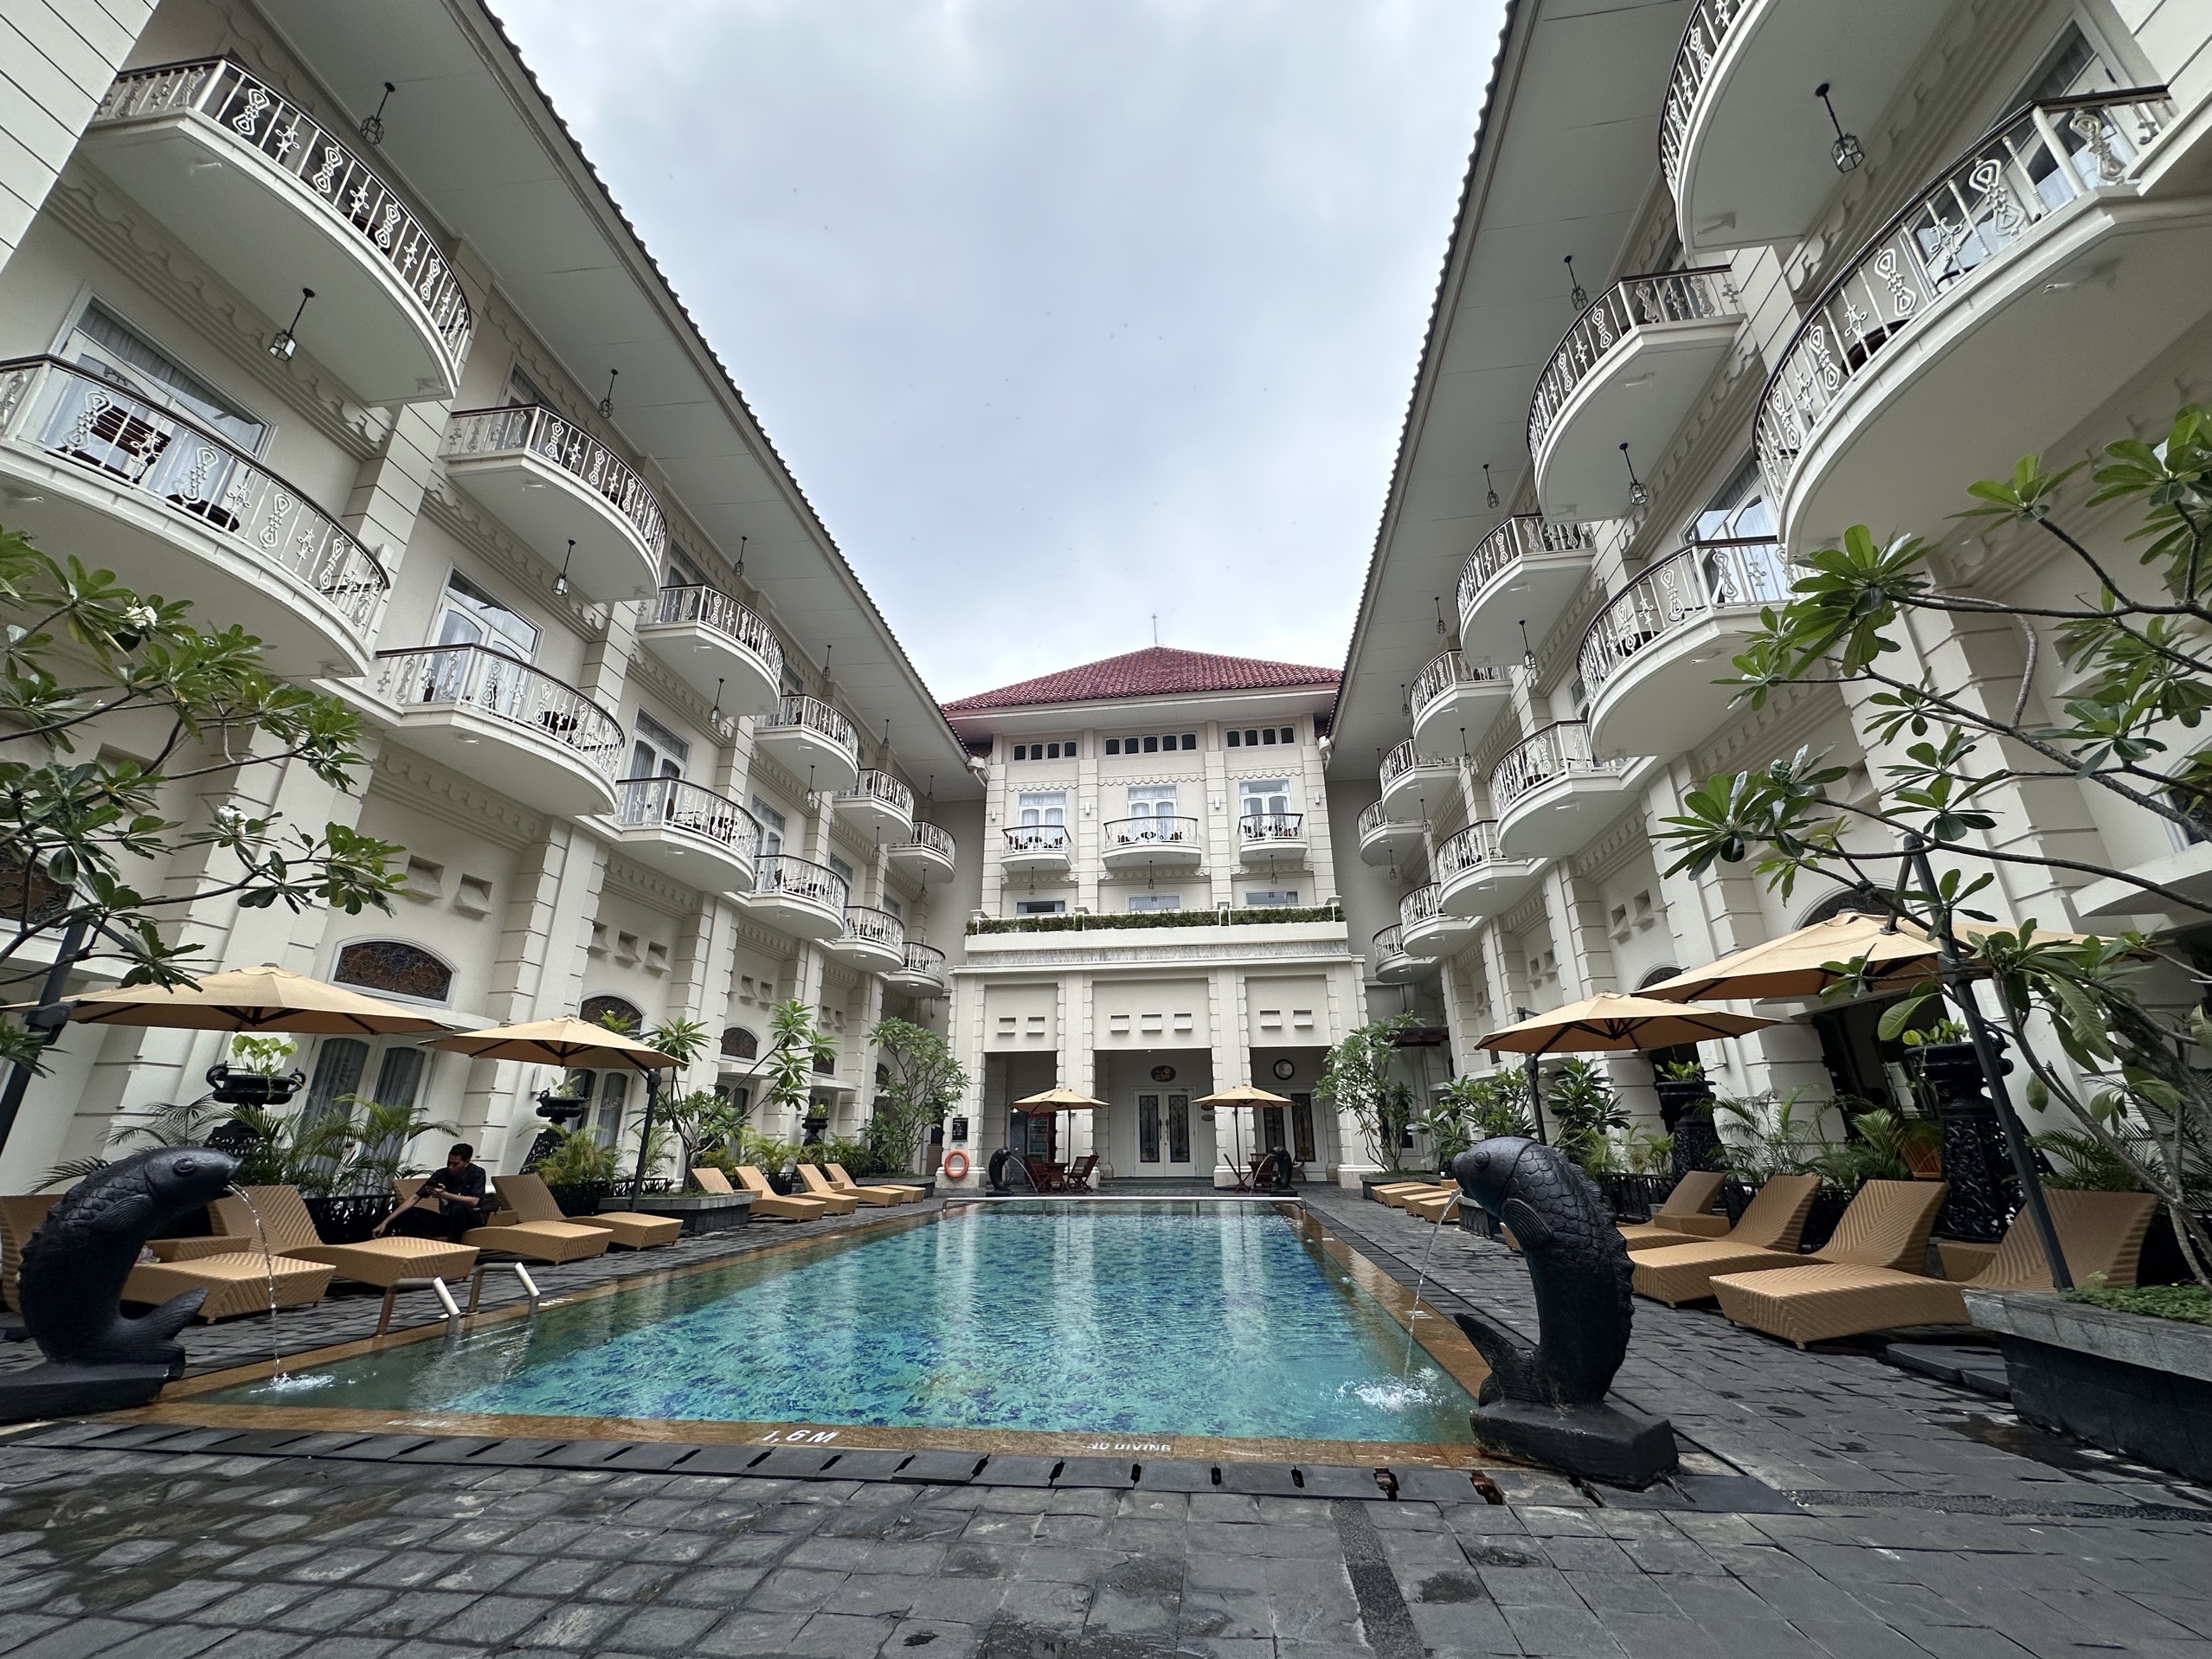 很多人说这个是网红酒店，设施和服务比较差。但是体验下来，算是这么多次来印尼玩，性价比前两位的酒店了。